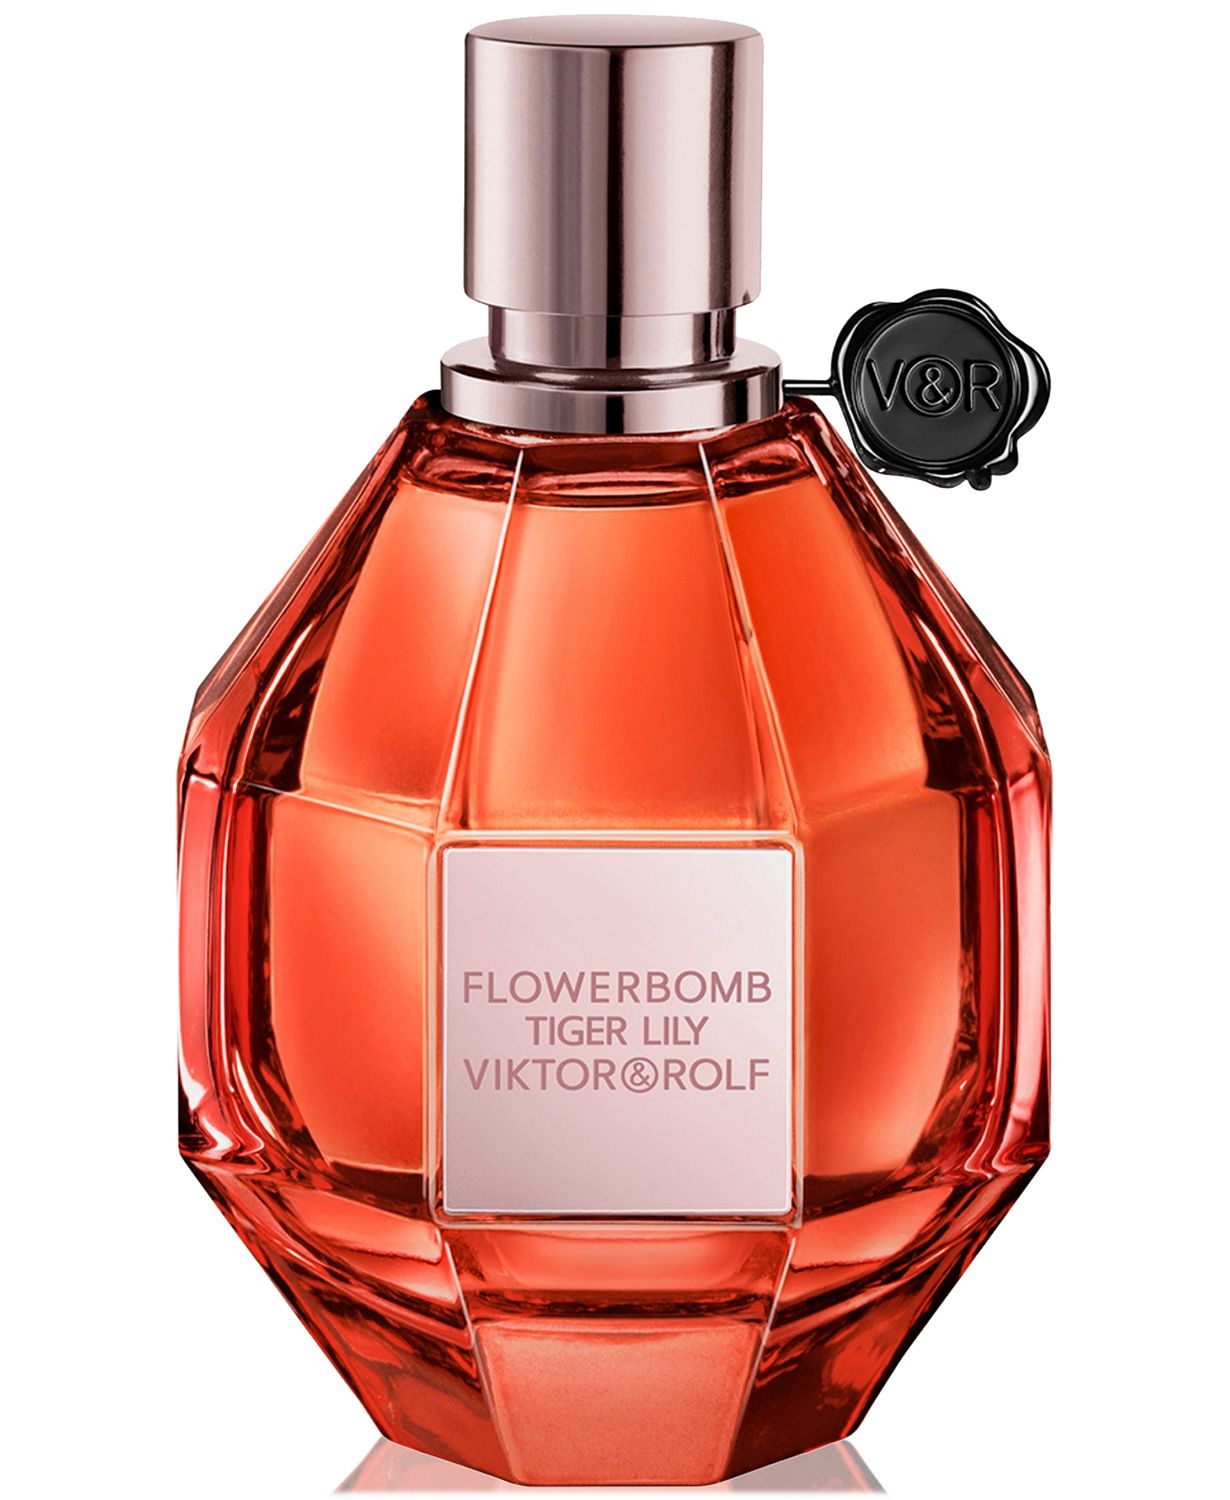 Flowerbomb Tiger Lily Eau de Parfum, 3.4 oz.